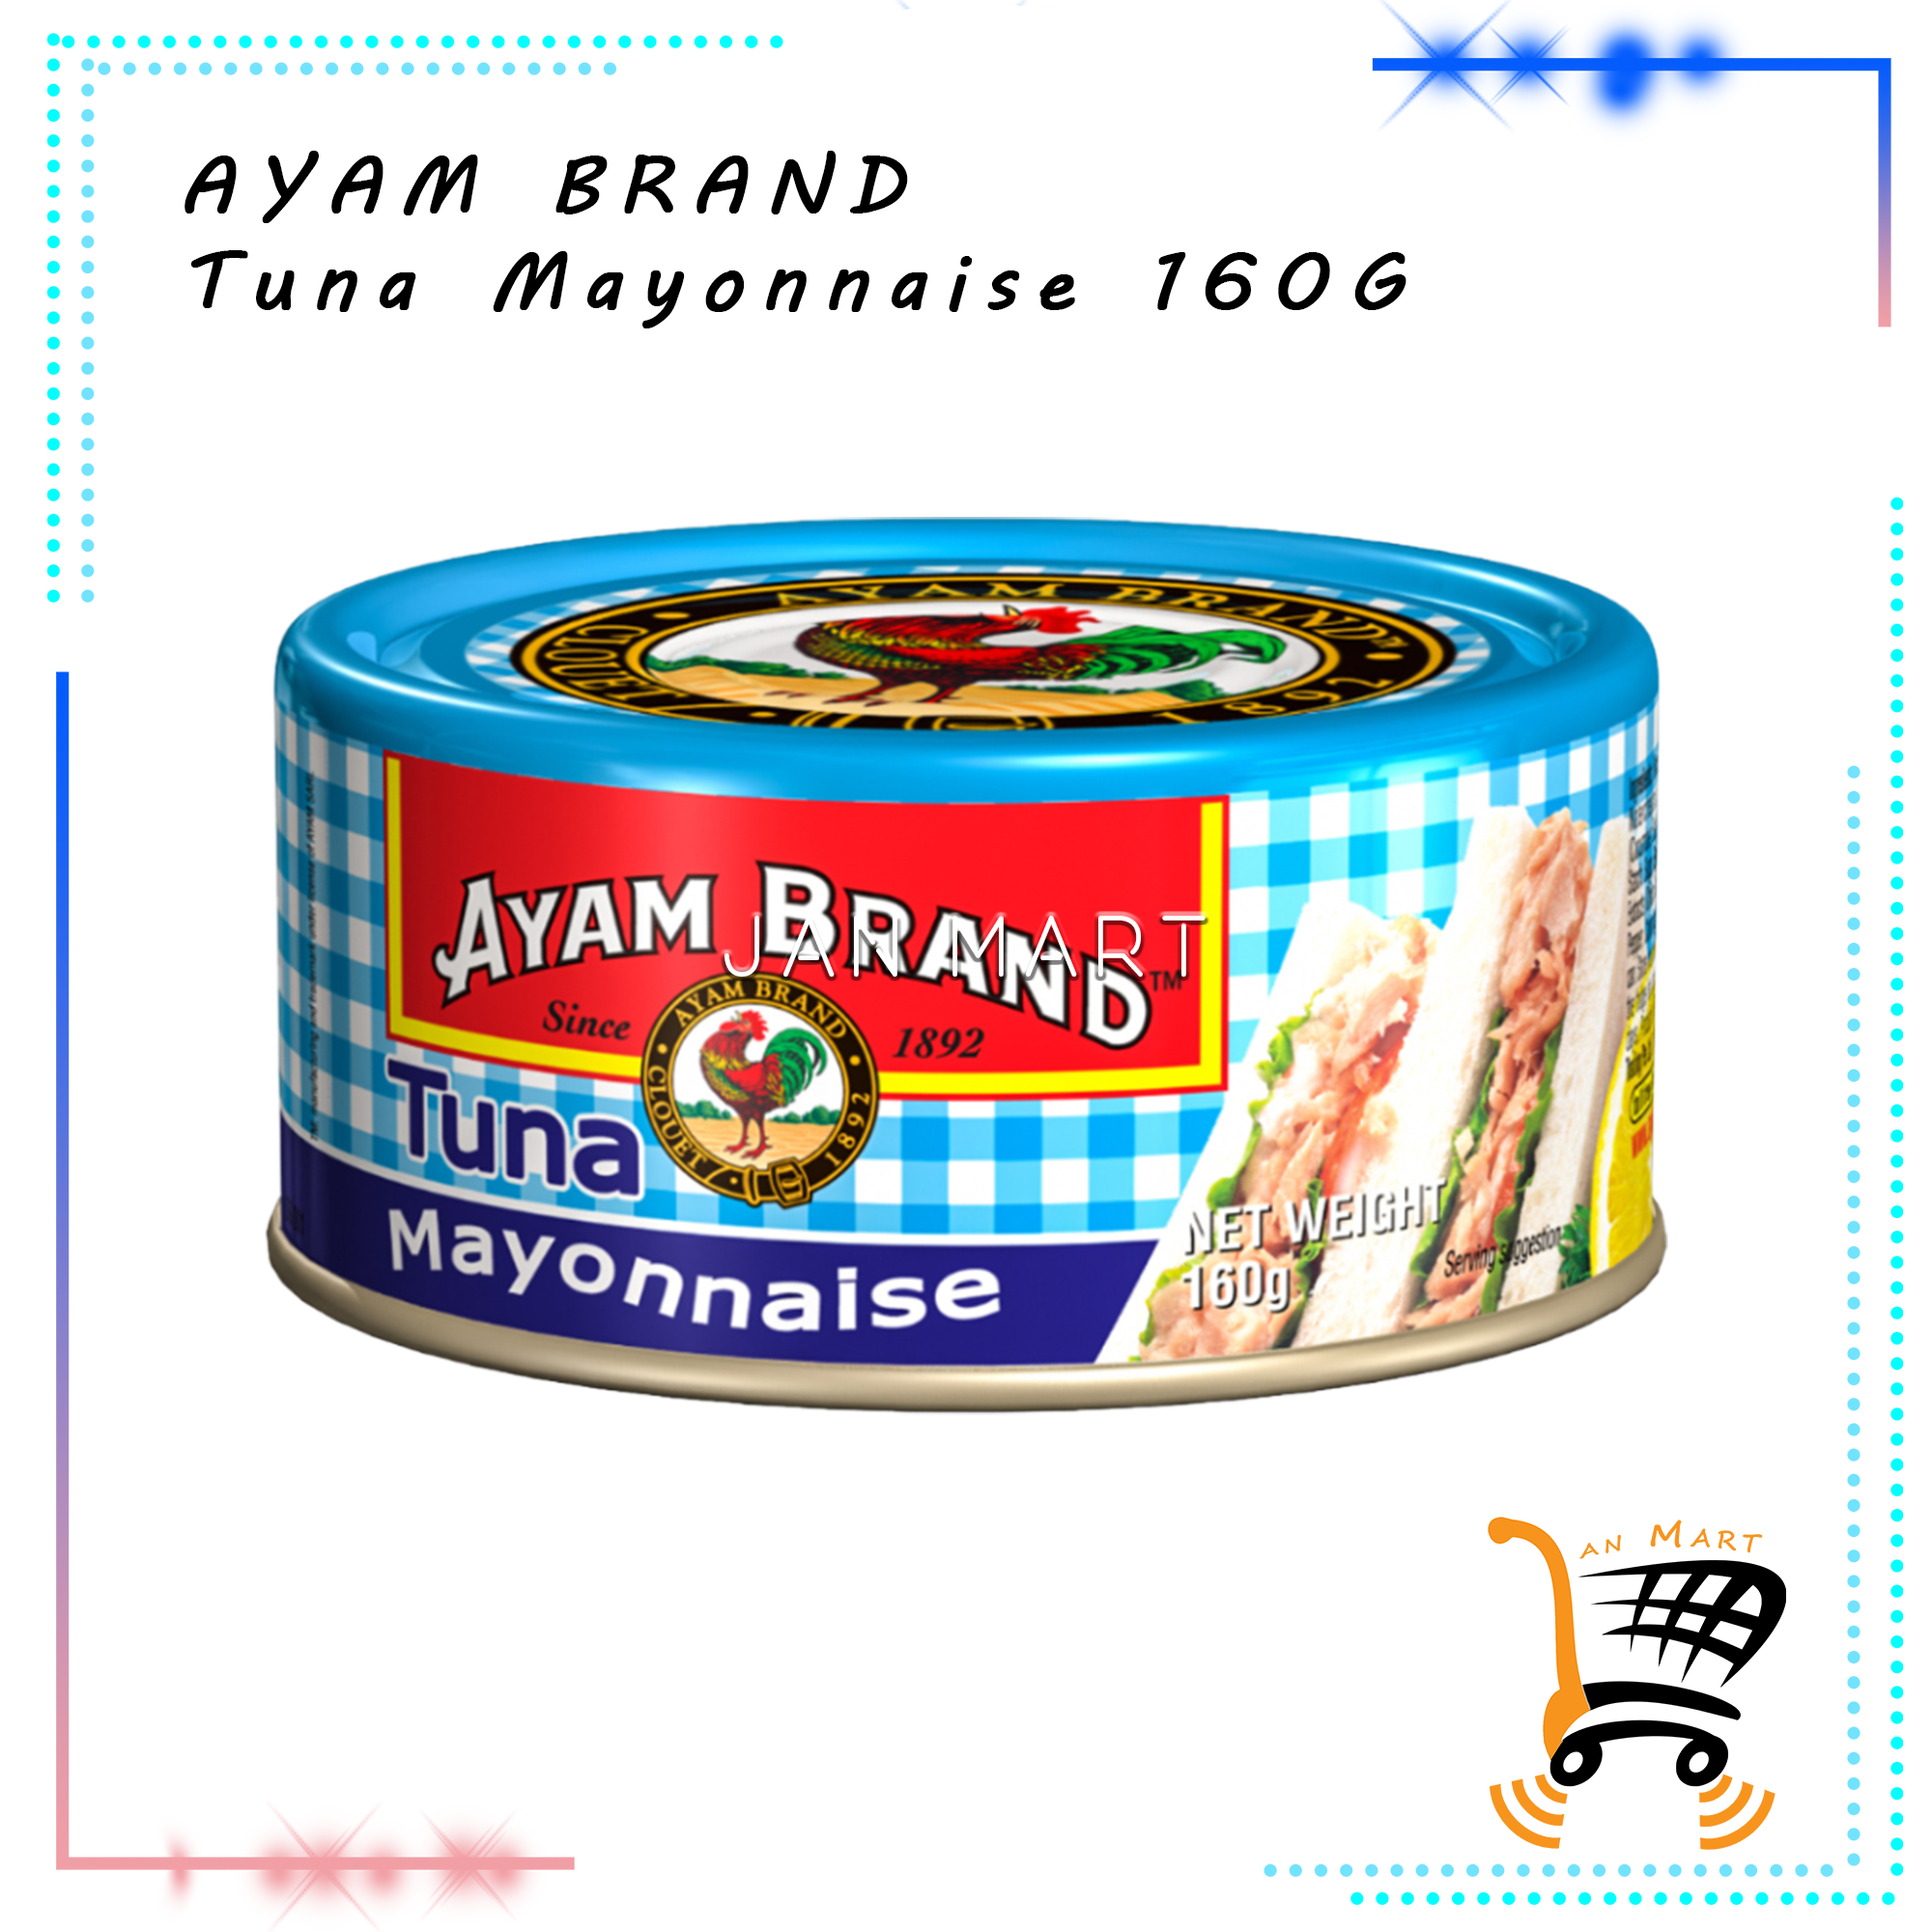 AYAM BRAND Tuna Mayonnaise 160G